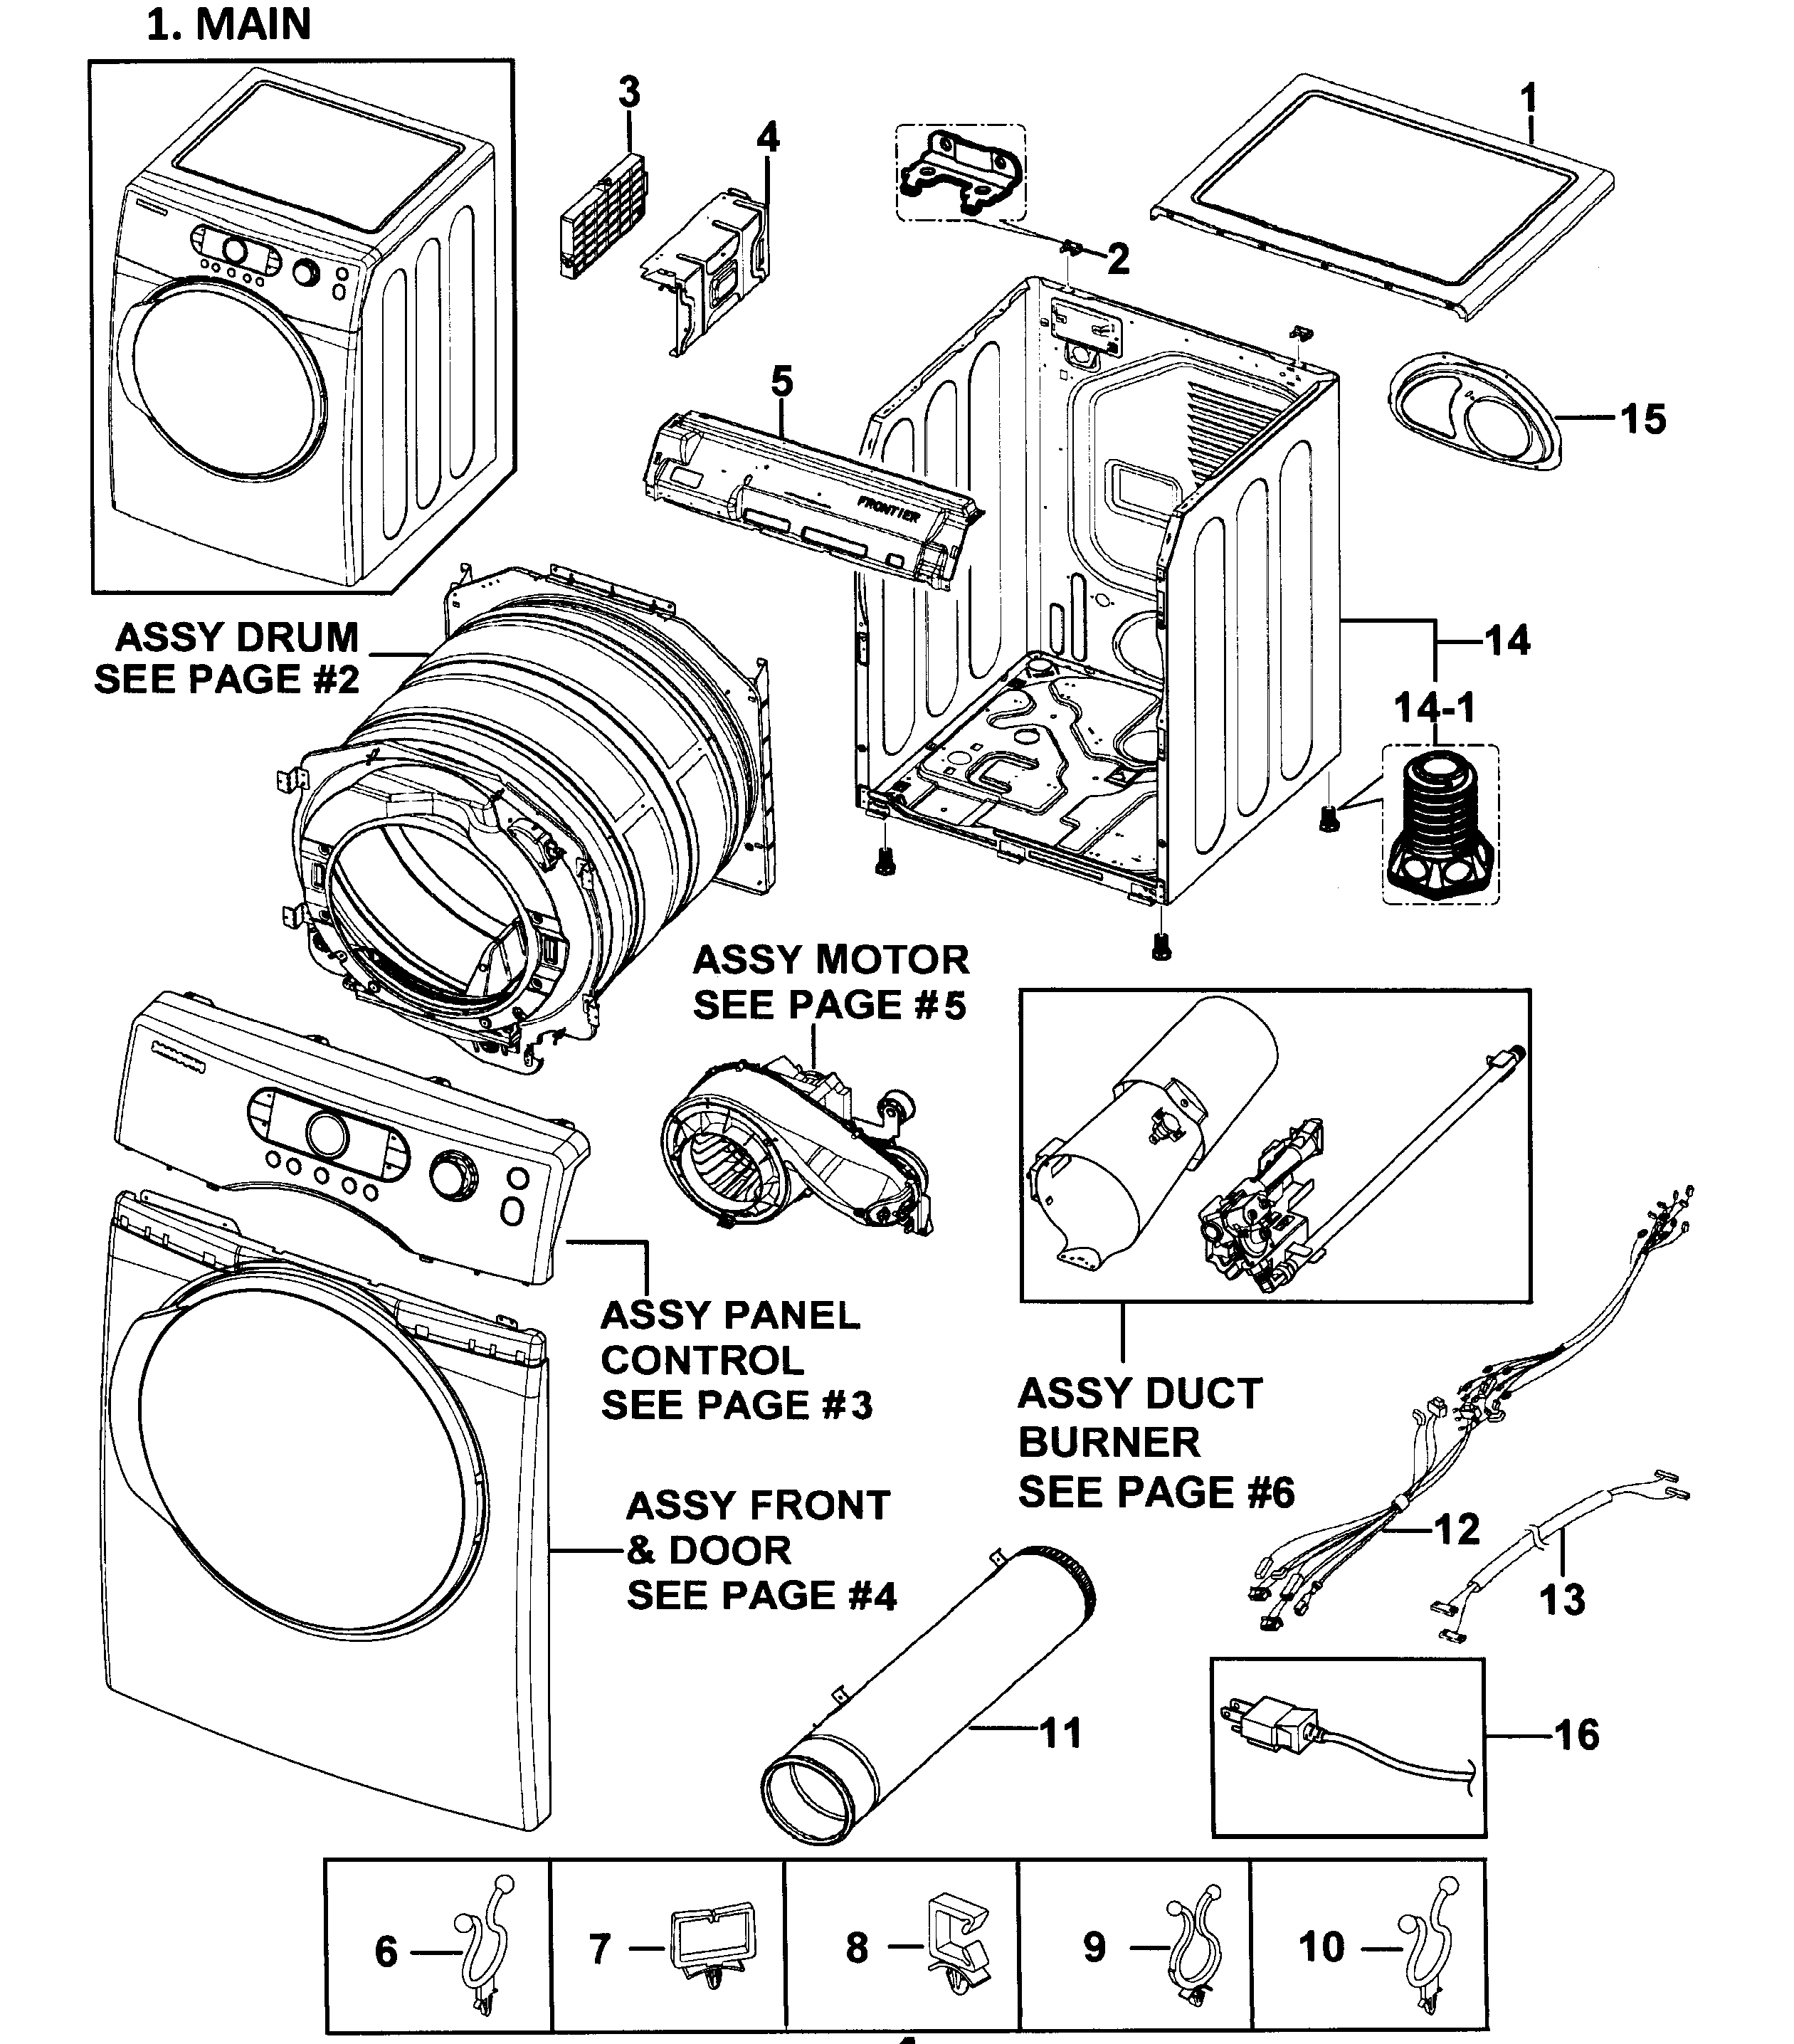 Samsung Dryer Wiring Diagram